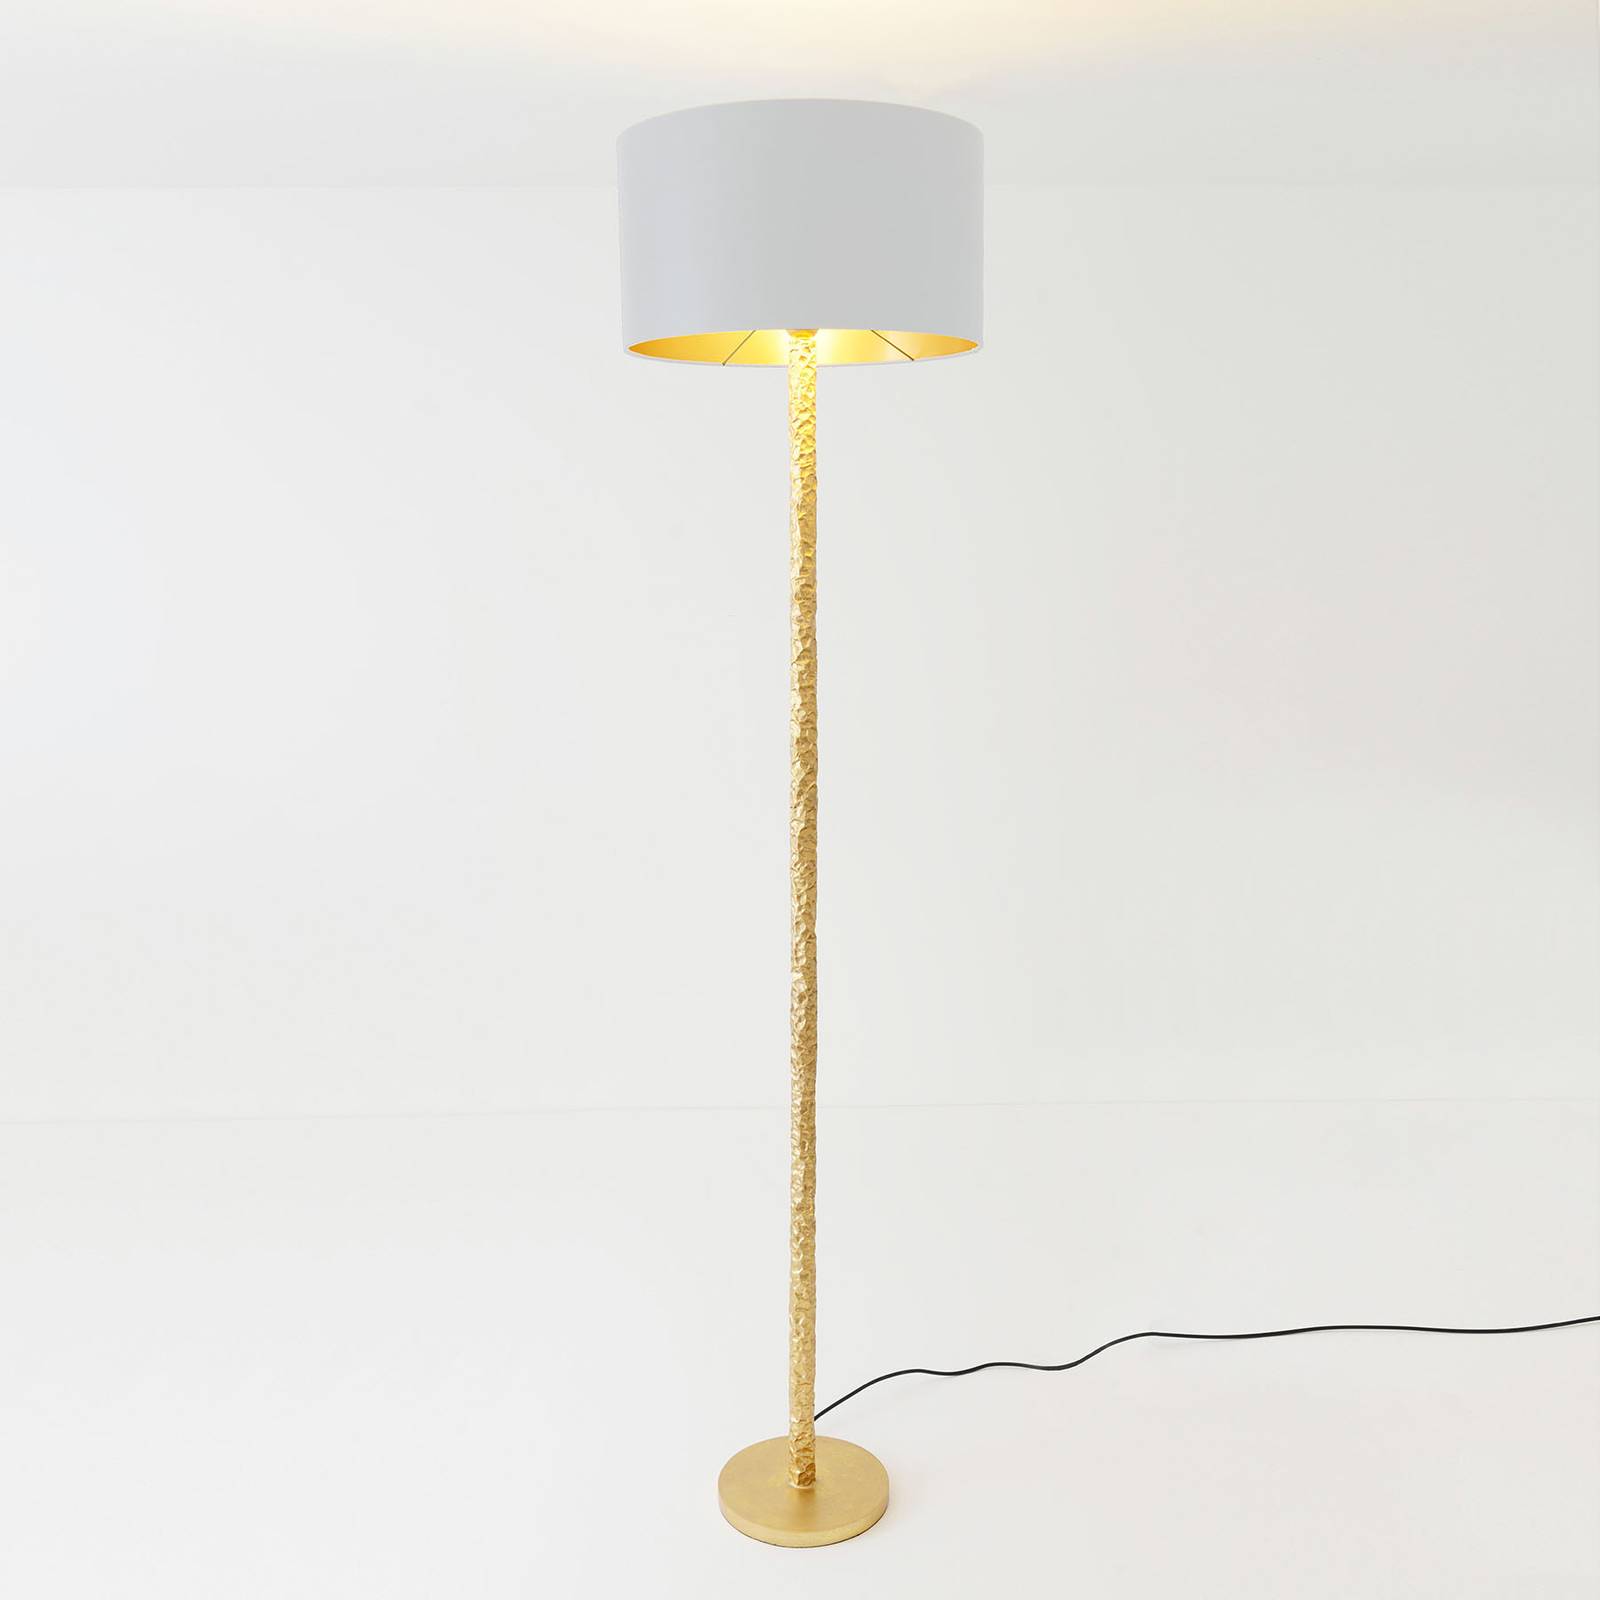 Holländer Stehlampe Cancelliere Rotonda Seide weiß/gold